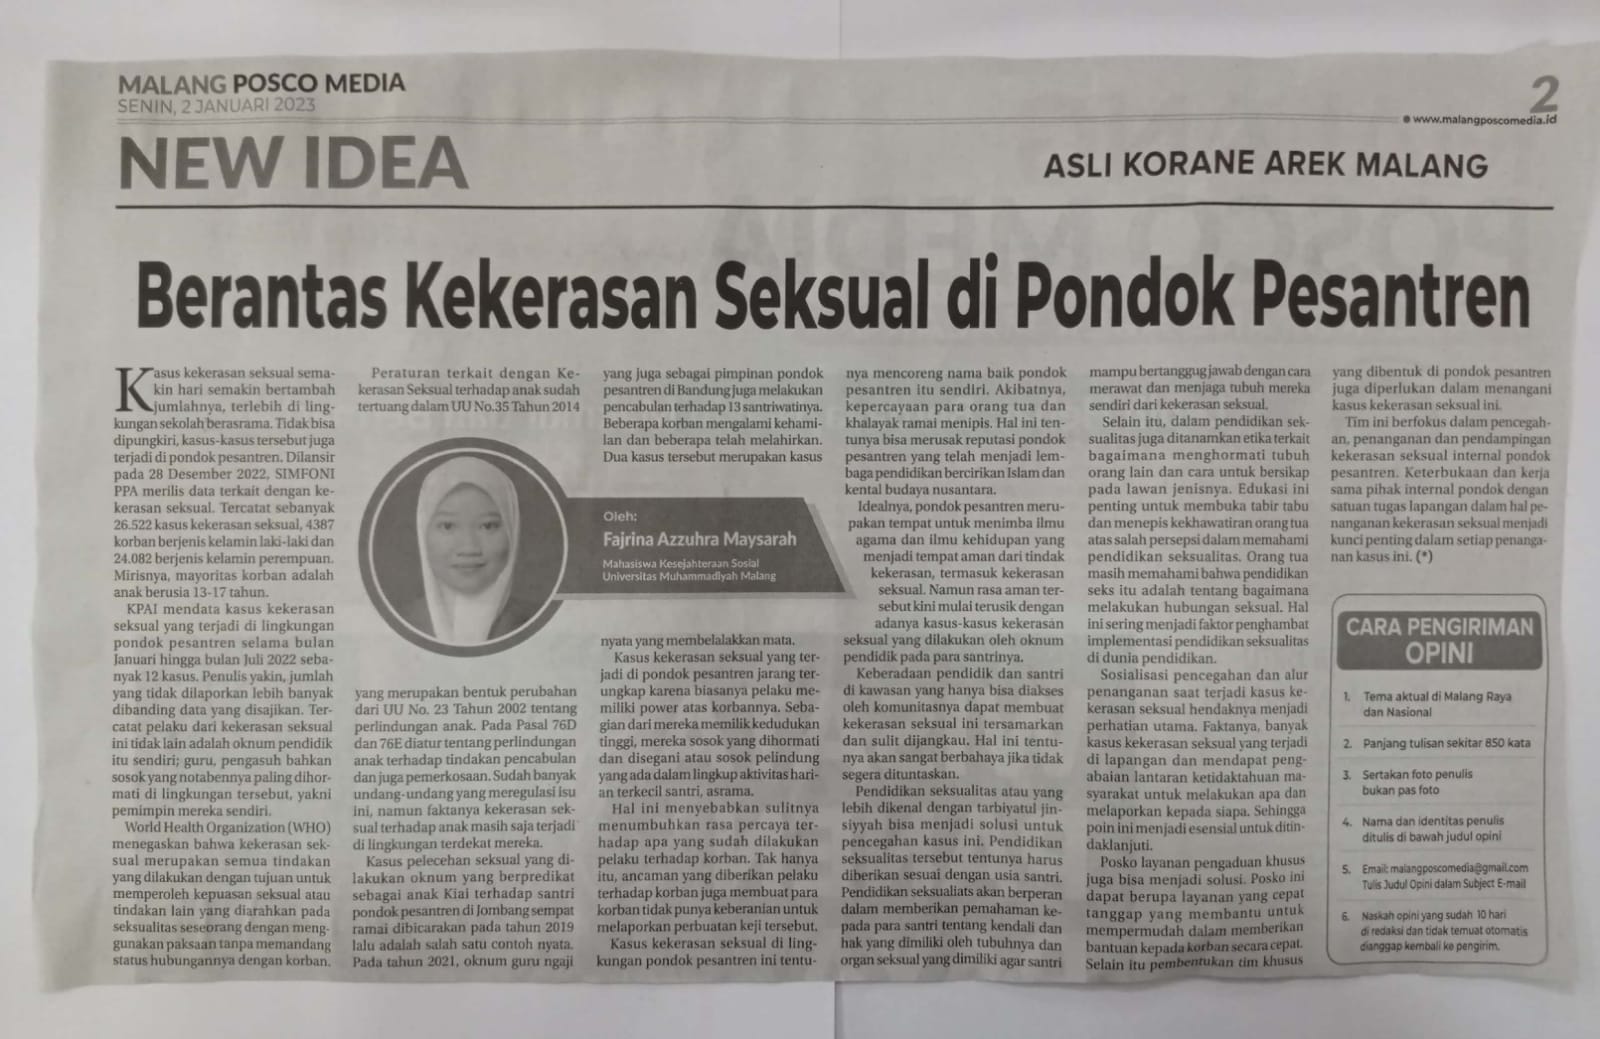 Berantas Kekerasan Seksual Di Pondok Pesantren Malang Posco Media